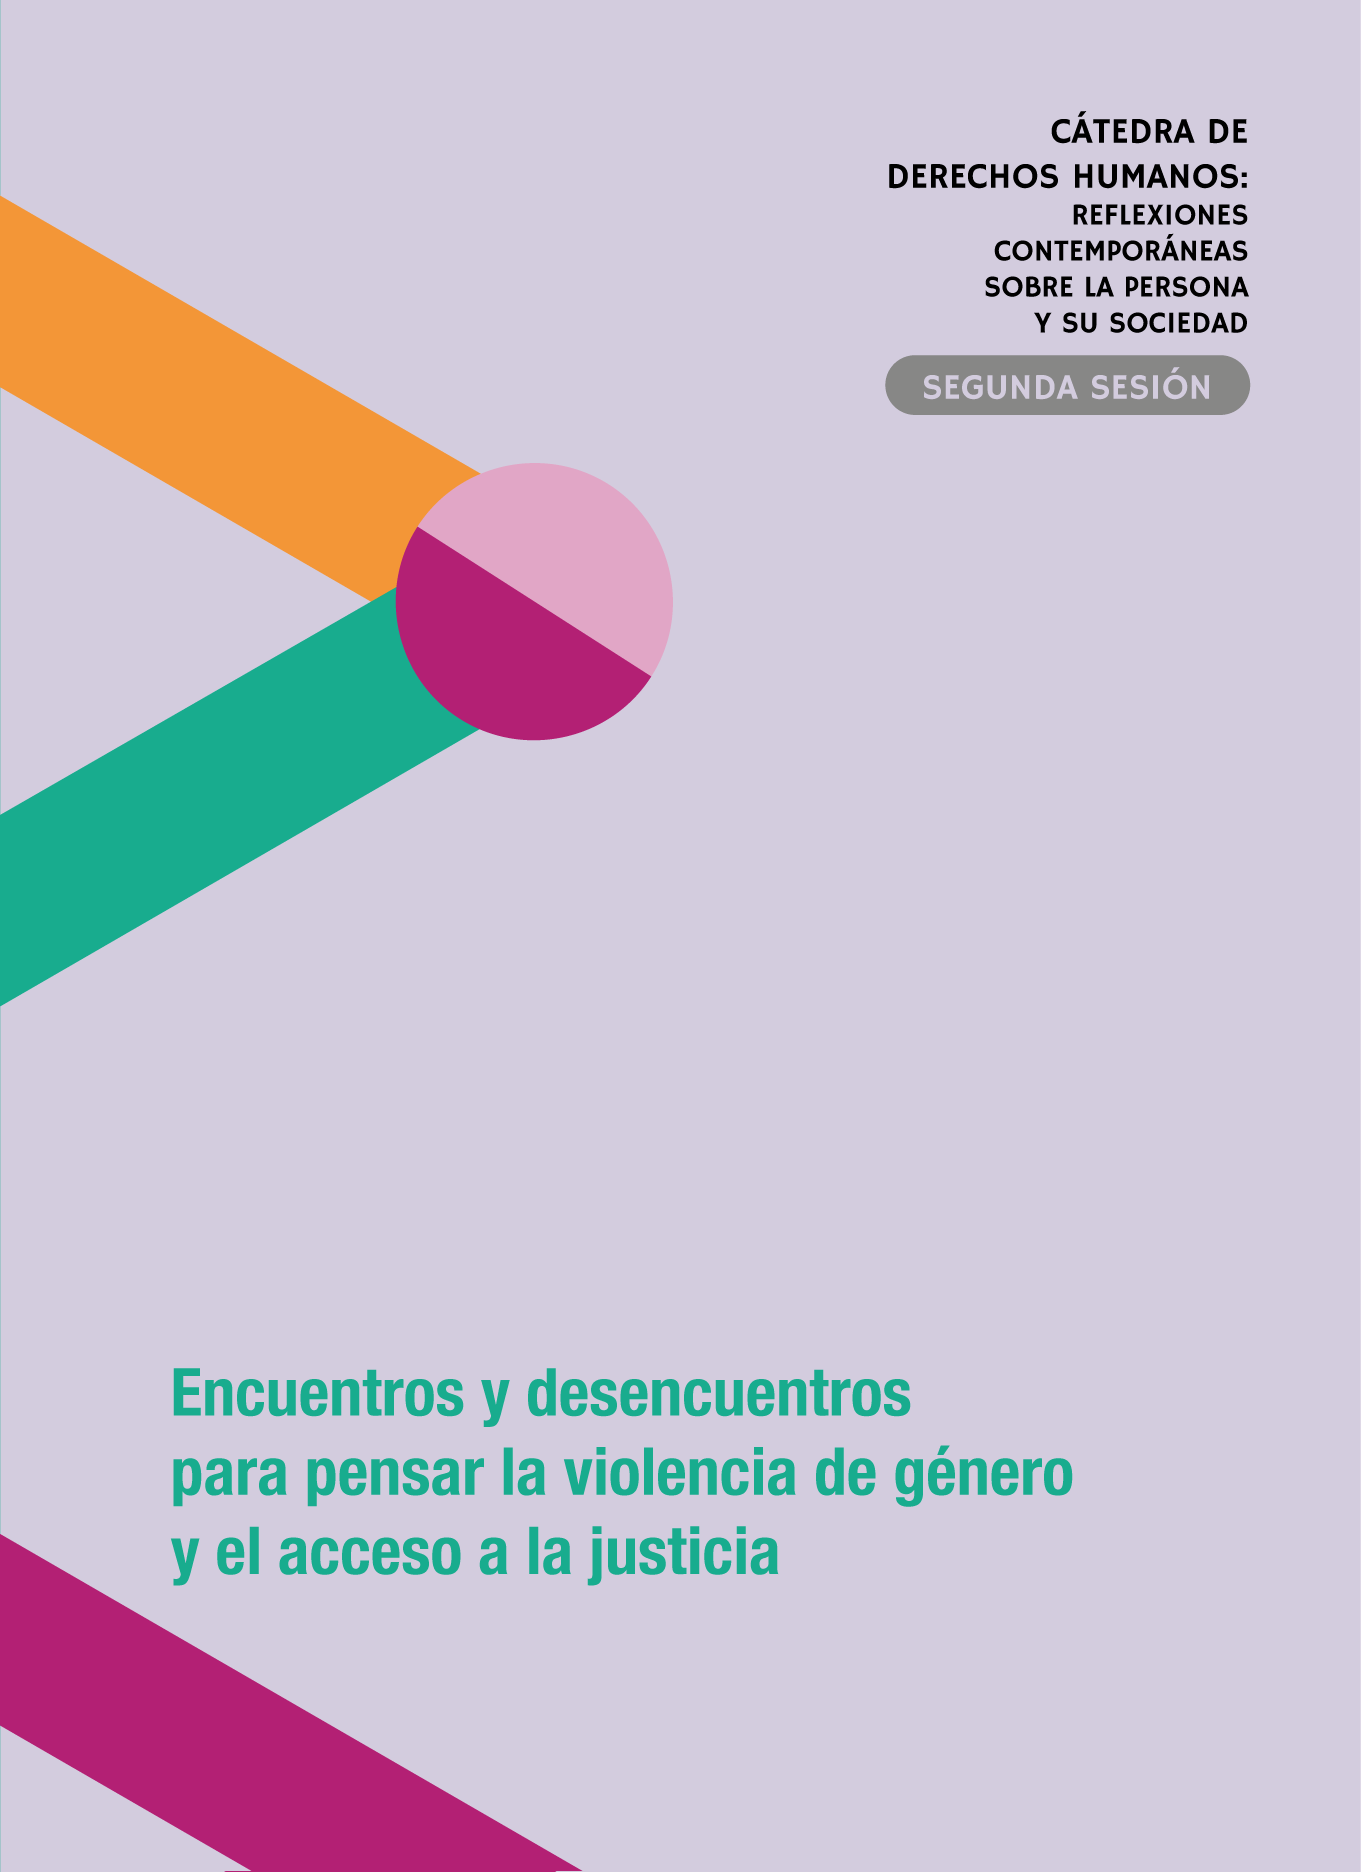 Cátedra de Derechos Humanos: Encuentros y desencuentros para pensar la violencia de género y el acceso a la justicia / Sesión 2